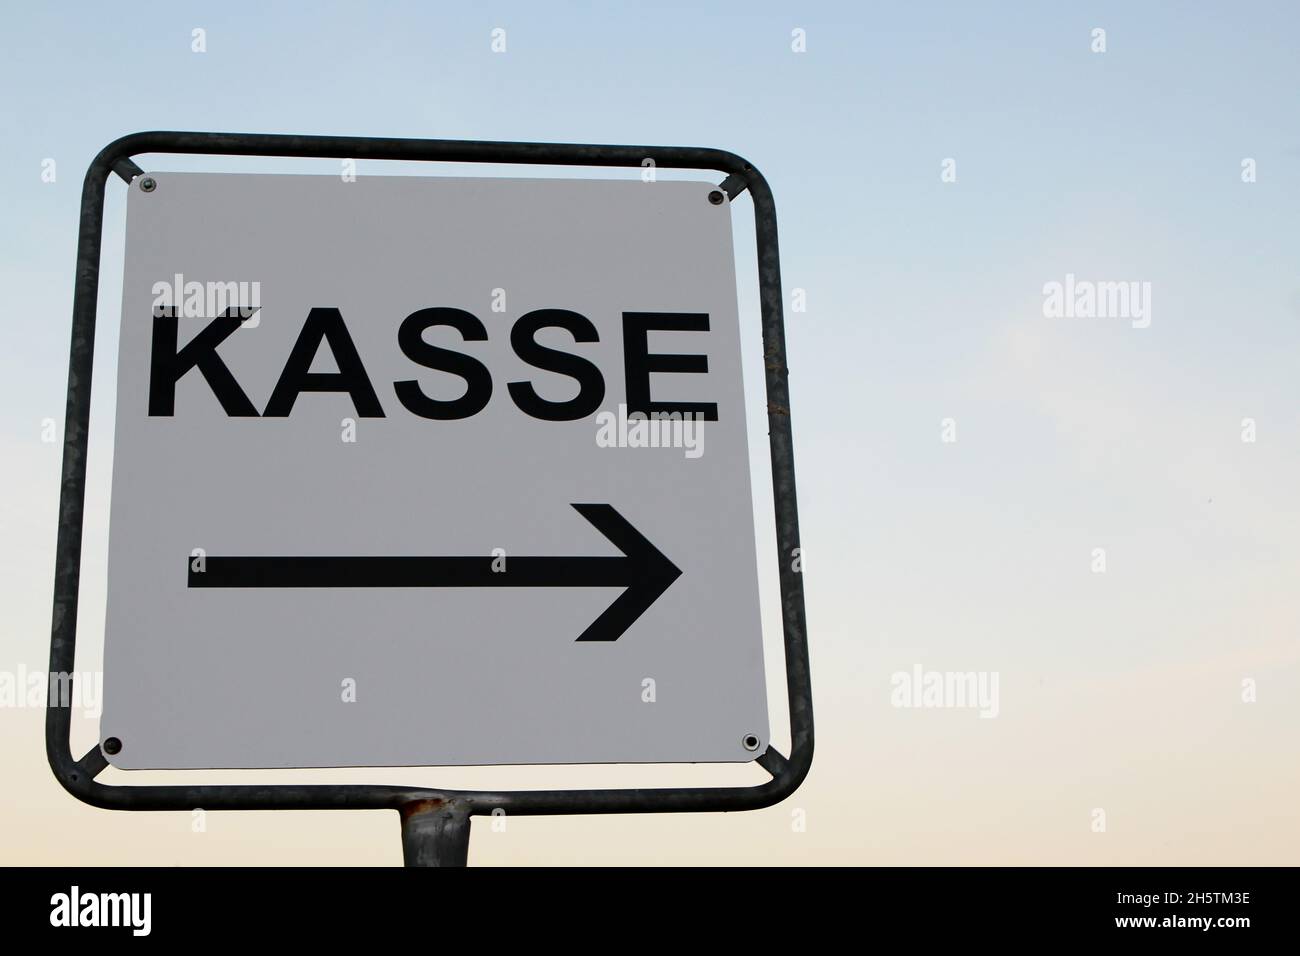 Ein weißes Schild mit schwarzer Schrift 'Kasse' mit Pfeil in Richtung rechts. Rügen, Deutschland. Stock Photo